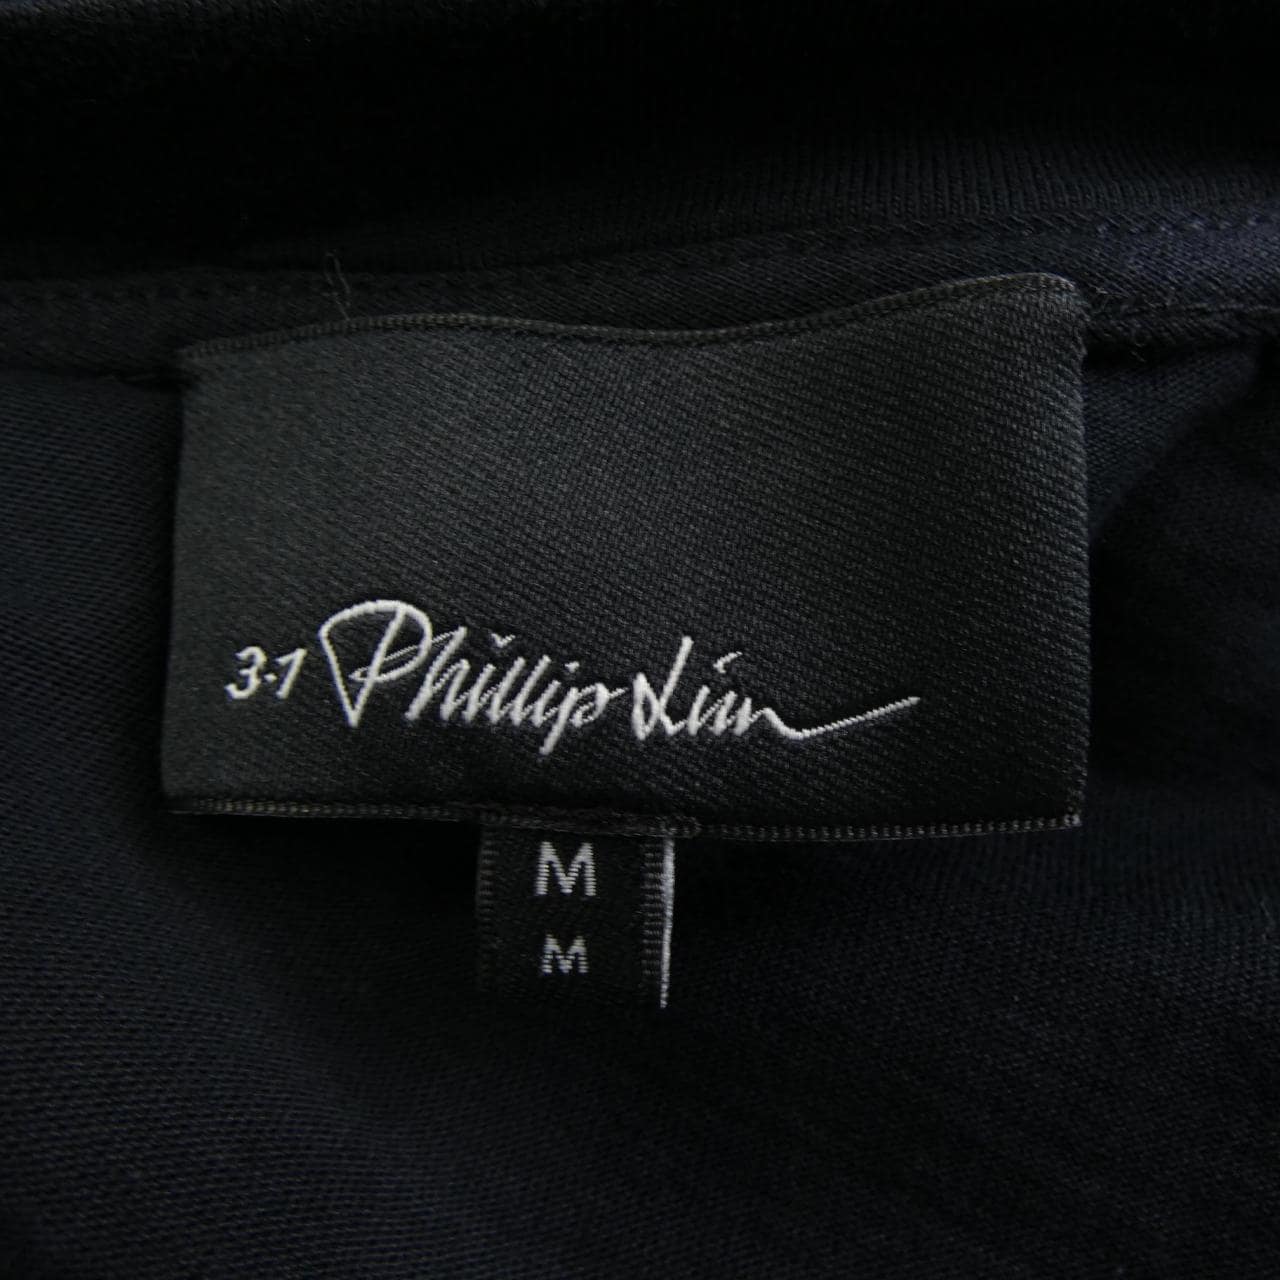 3.1 Phillip Lim 3.1 Phillip Lim T-shirt